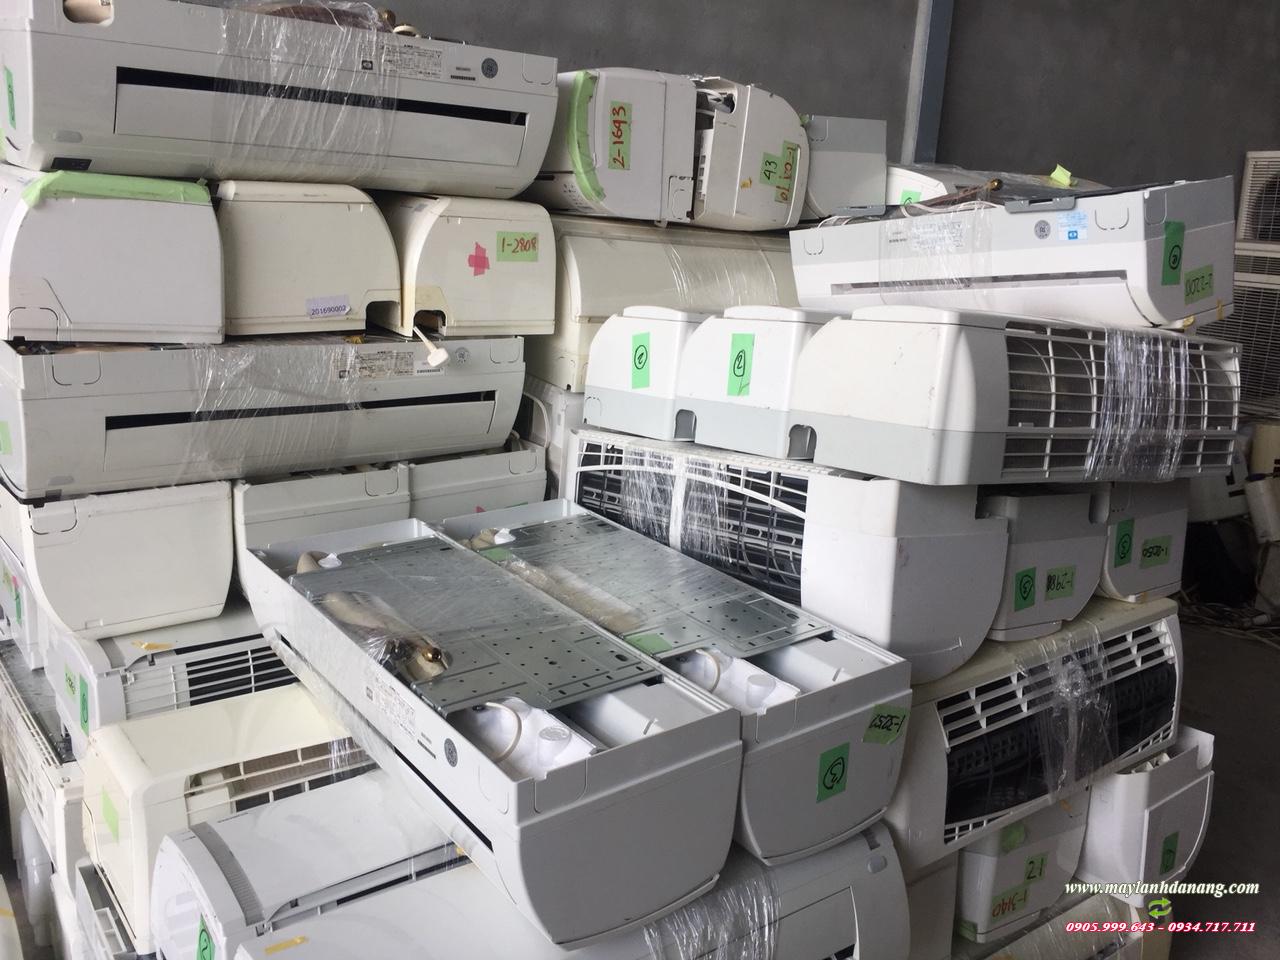 Đơn vị thu mua máy lạnh cũ Đà Nẵng giá cao